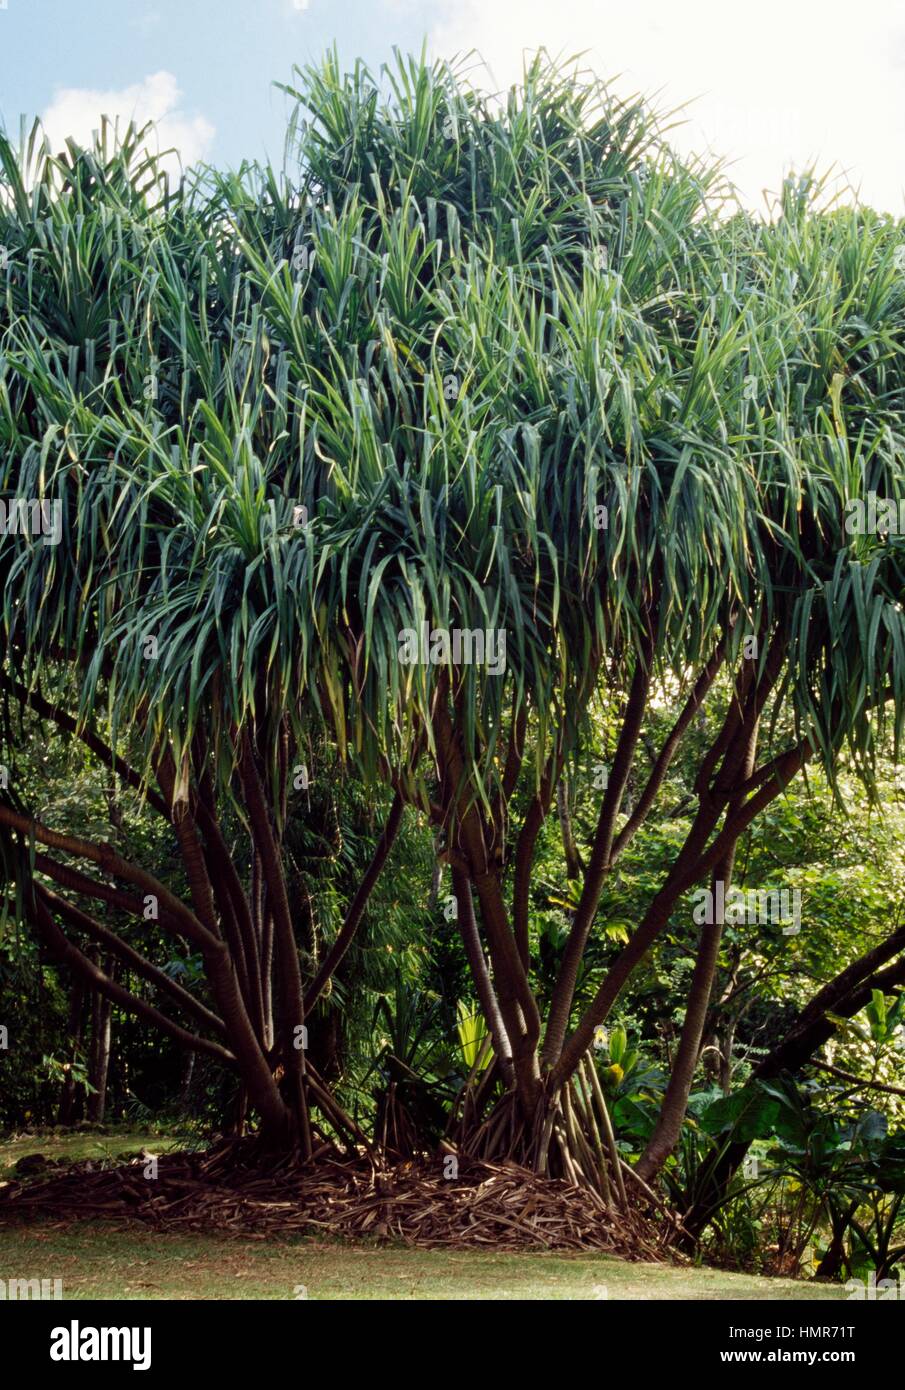 Common screwpine (Pandanus utilis), Pandanaceae. Stock Photo